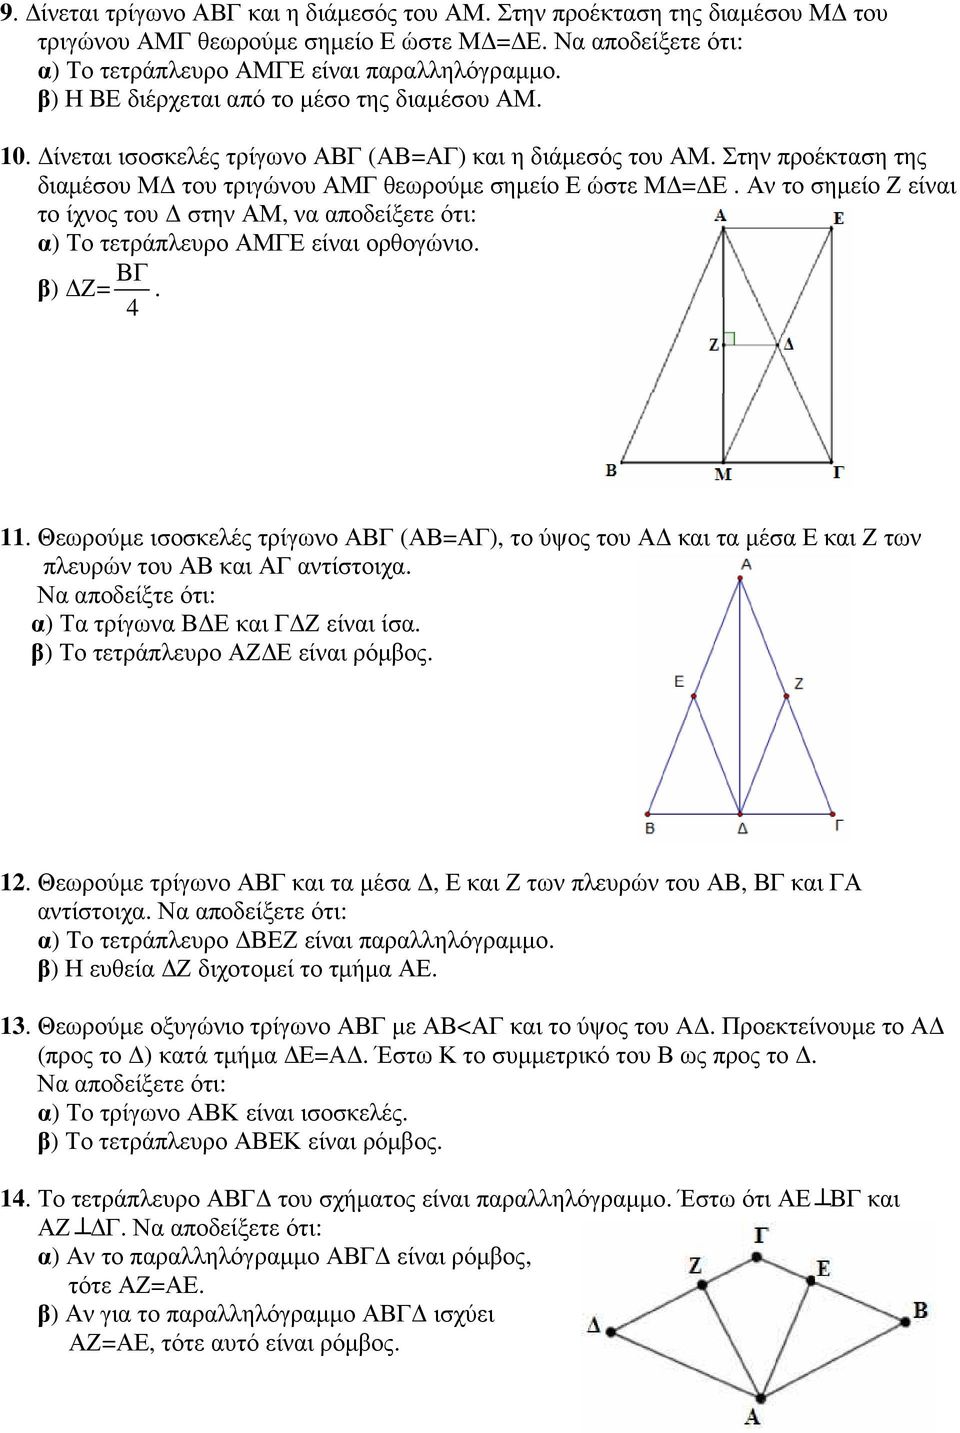 Στην προέκταση της διαµέσου Μ του τριγώνου ΑΜΓ θεωρούµε σηµείο Ε ώστε Μ = Ε. Αν το σηµείο Ζ είναι το ίχνος του στην ΑΜ, να αποδείξετε ότι: α) Το τετράπλευρο ΑΜΓΕ είναι ορθογώνιο. ΒΓ β) Ζ=. 4 11.